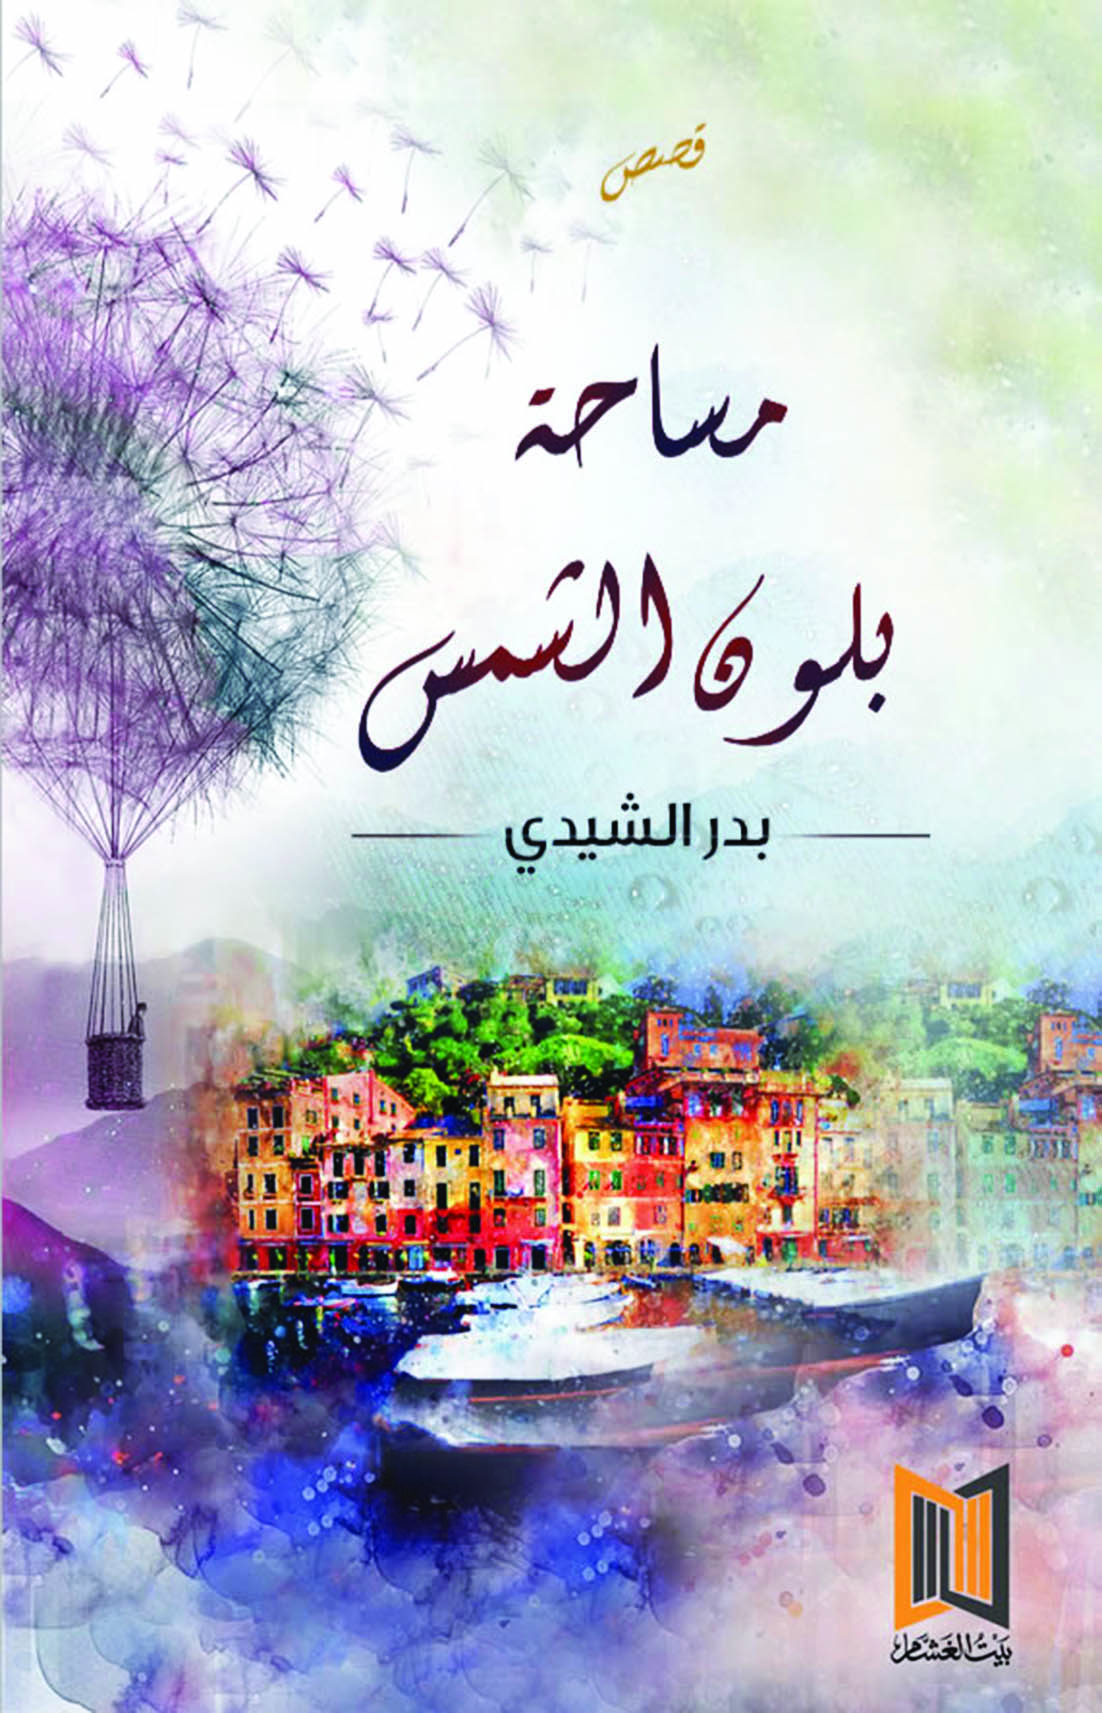 من بينها أكثر من 70 عنوانا جديدا
بيت الغشام تقدم قرابة 500 إصدار في معرض الكتاب 2019م